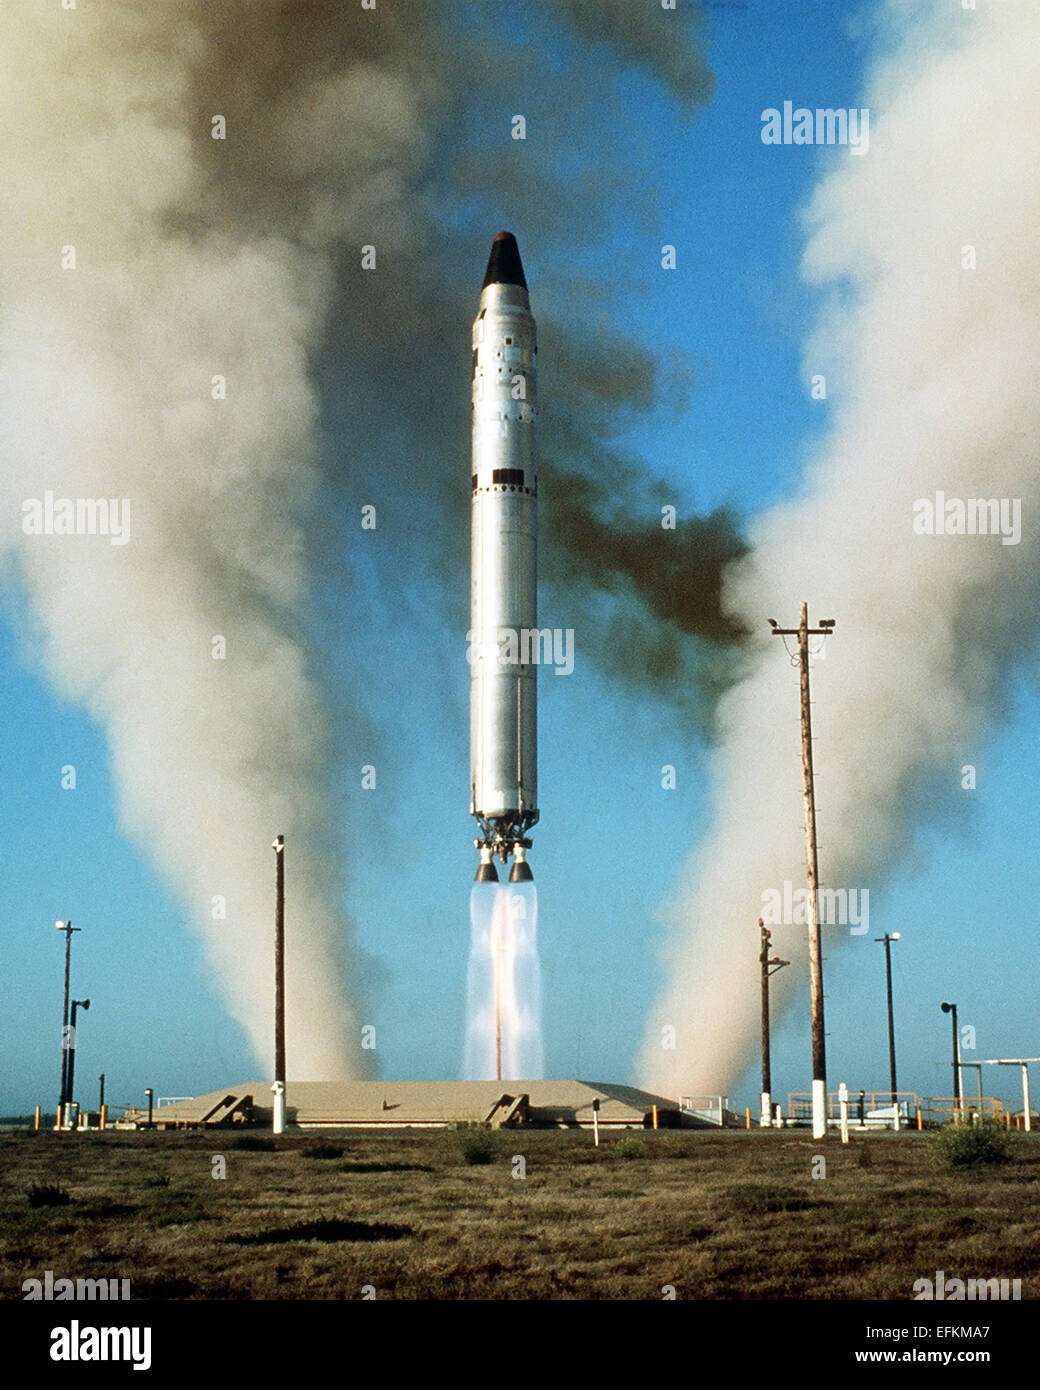 Eine Air Force Titan II interkontinentalen ballistischen Raketen II Rakete mit einem W53-Sprengkopf passen in die Mk-6 Re-Entry Vehicle während eines Tests auf der Vandenberg Air Force Base 1. Januar 1975 in Vandenberg in Kalifornien ins Leben gerufen. Stockfoto